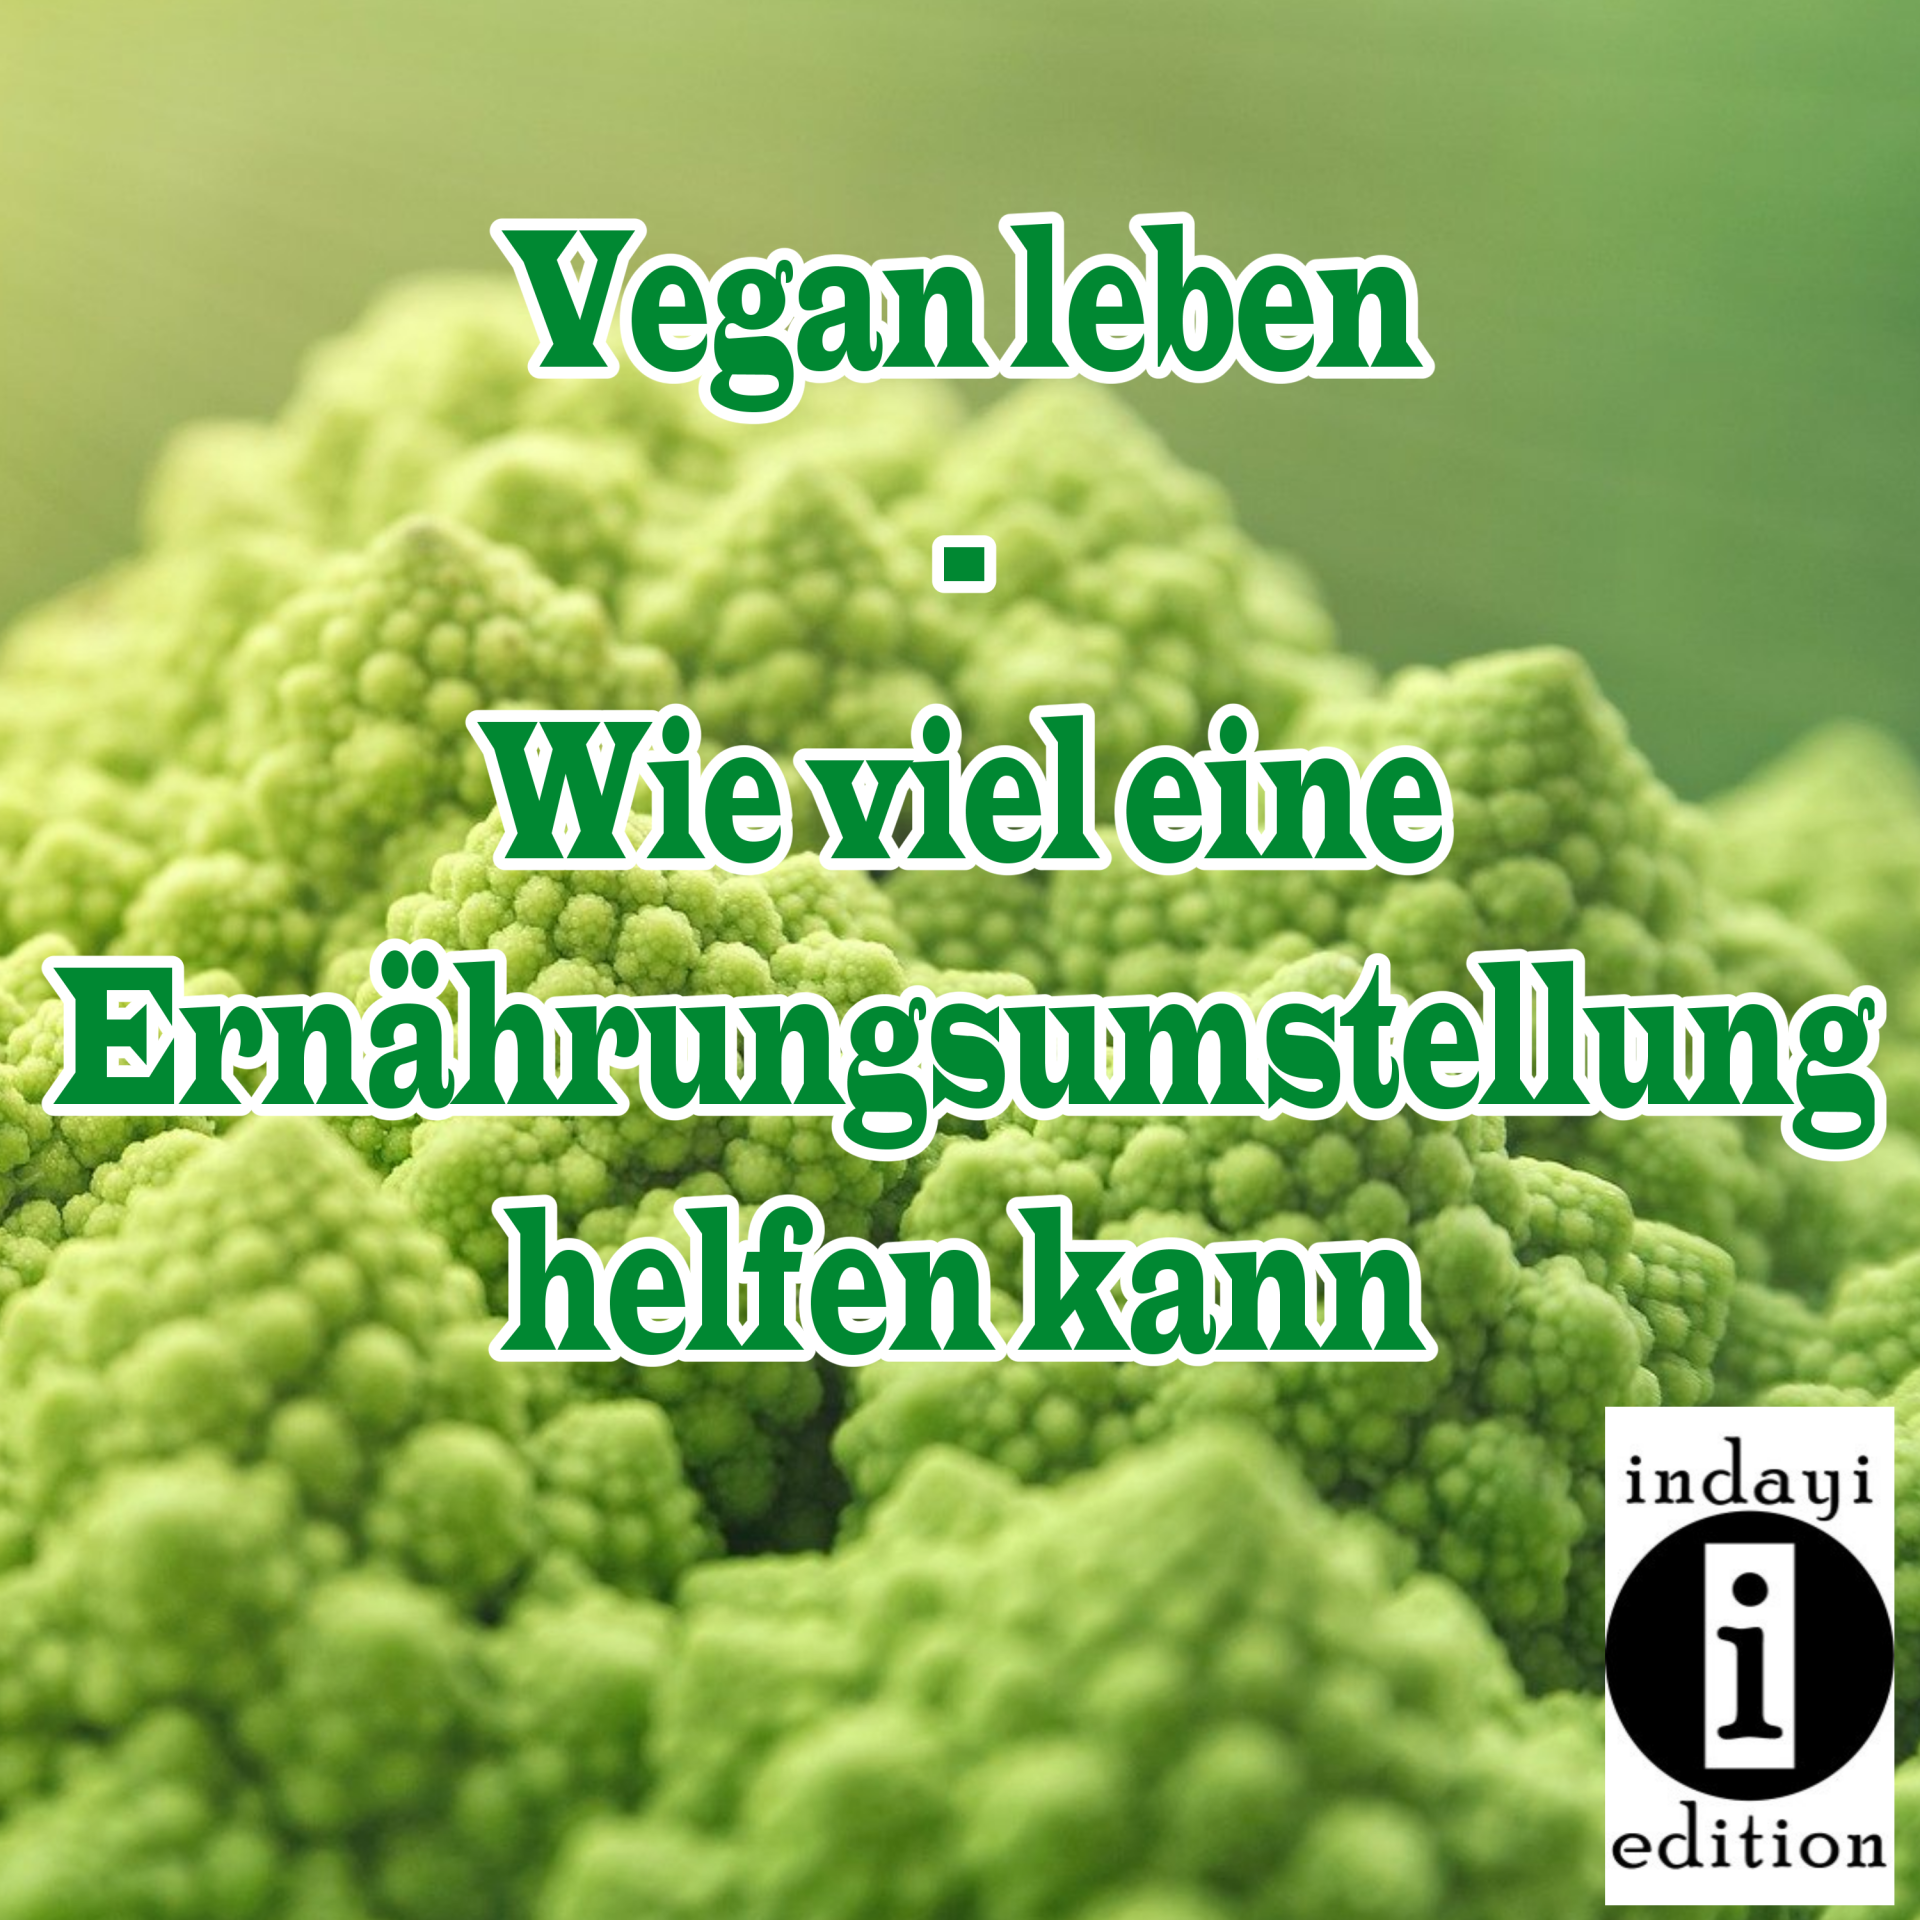 You are currently viewing Vegan leben, wie viel eine Ernährungsumstellung helfen kann // Spruch des Tages 21.09.2021